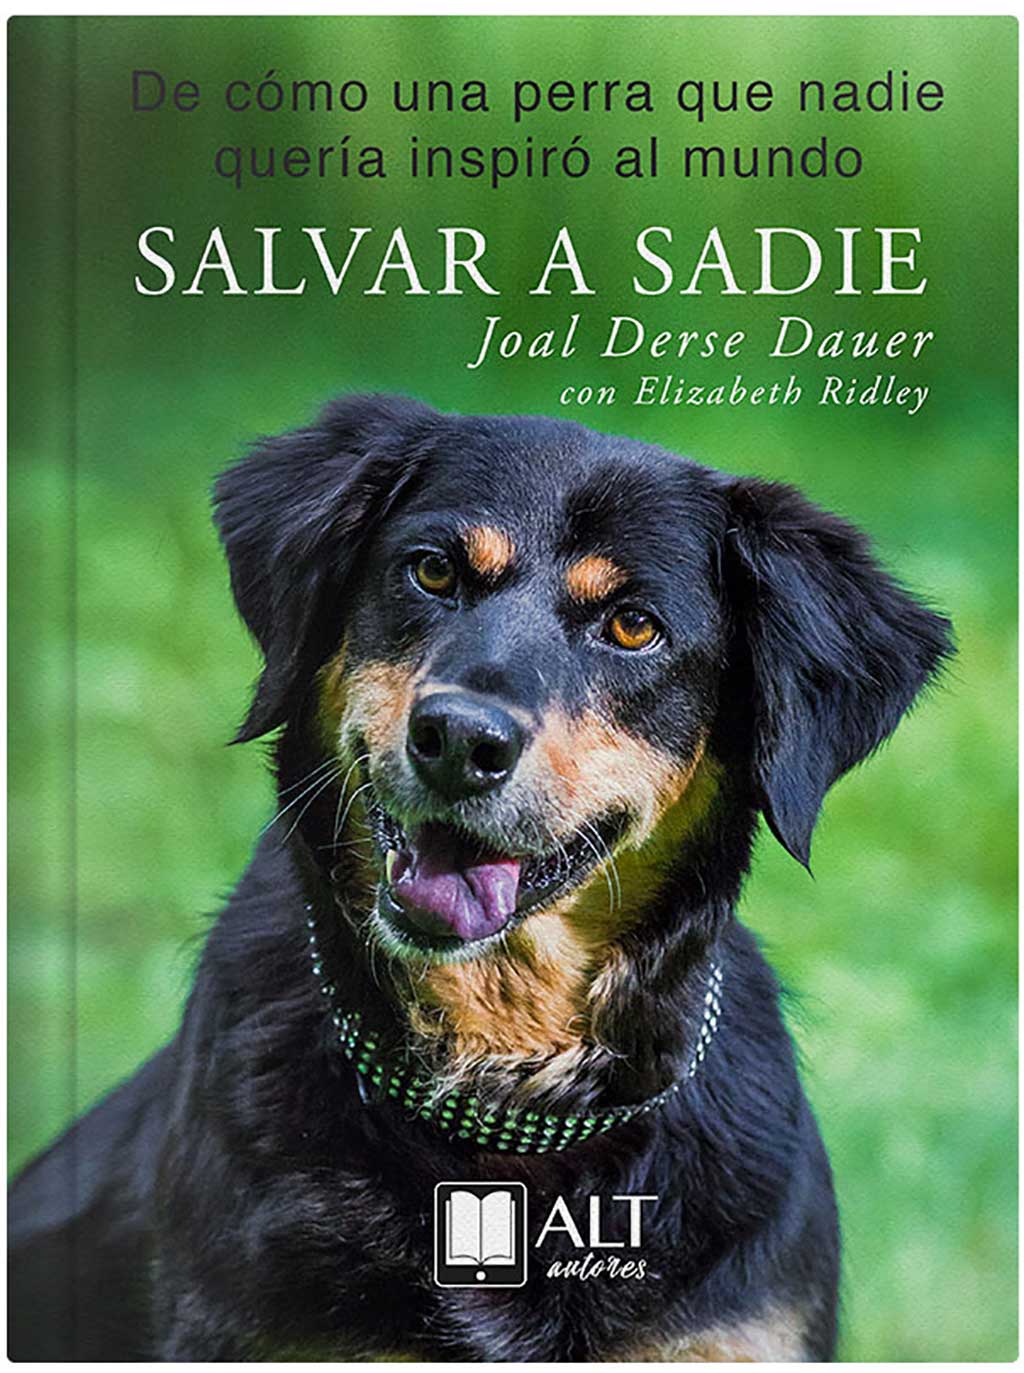 Salvar a Sadie, de cómo una perra que nadie quería inspiró al mundo. Nuevo libro.